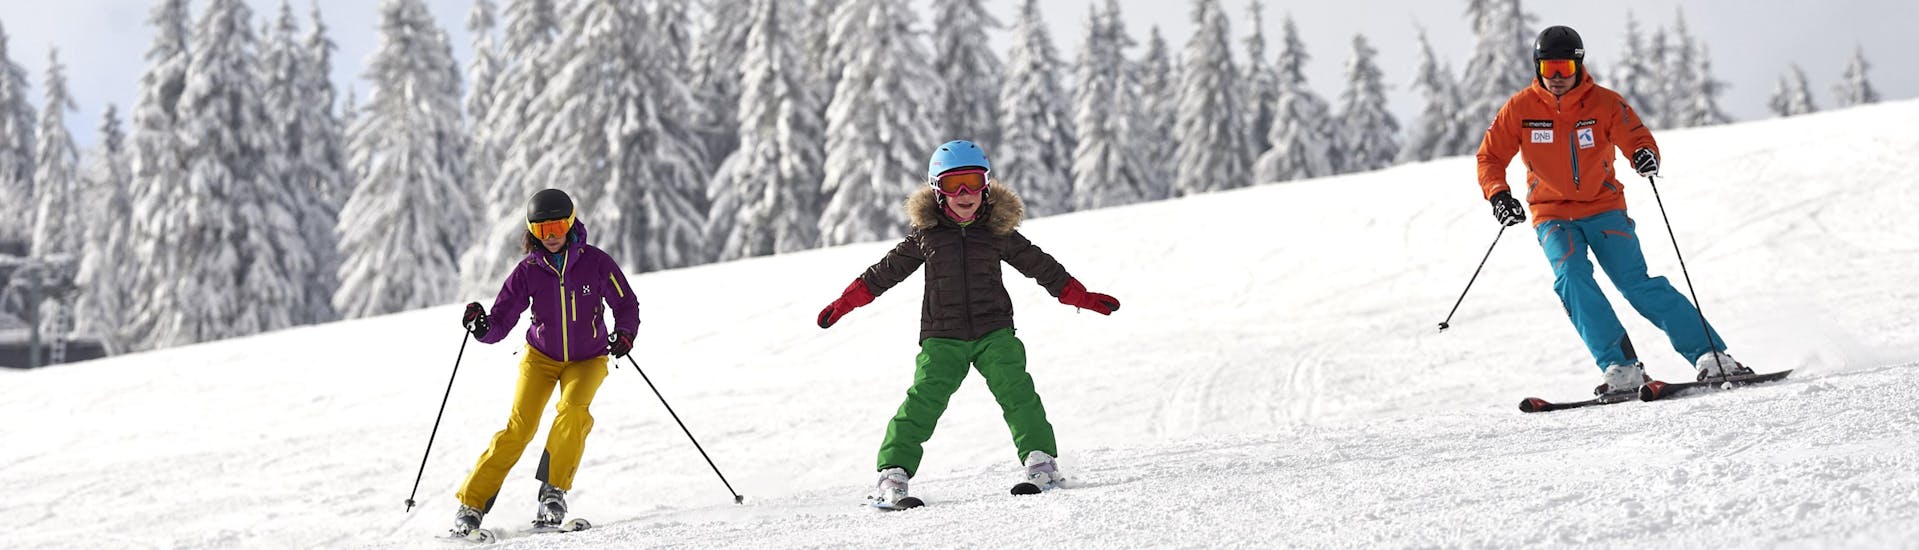 Eine Familie bestehend aus zwei Erwachsenen und einem Kind beim Skifahren am Großen Arber, einem beliebten deutschen Skigebiet in dem man bei einer der örtlichen Skischulen einen Skikurs buchen kann.